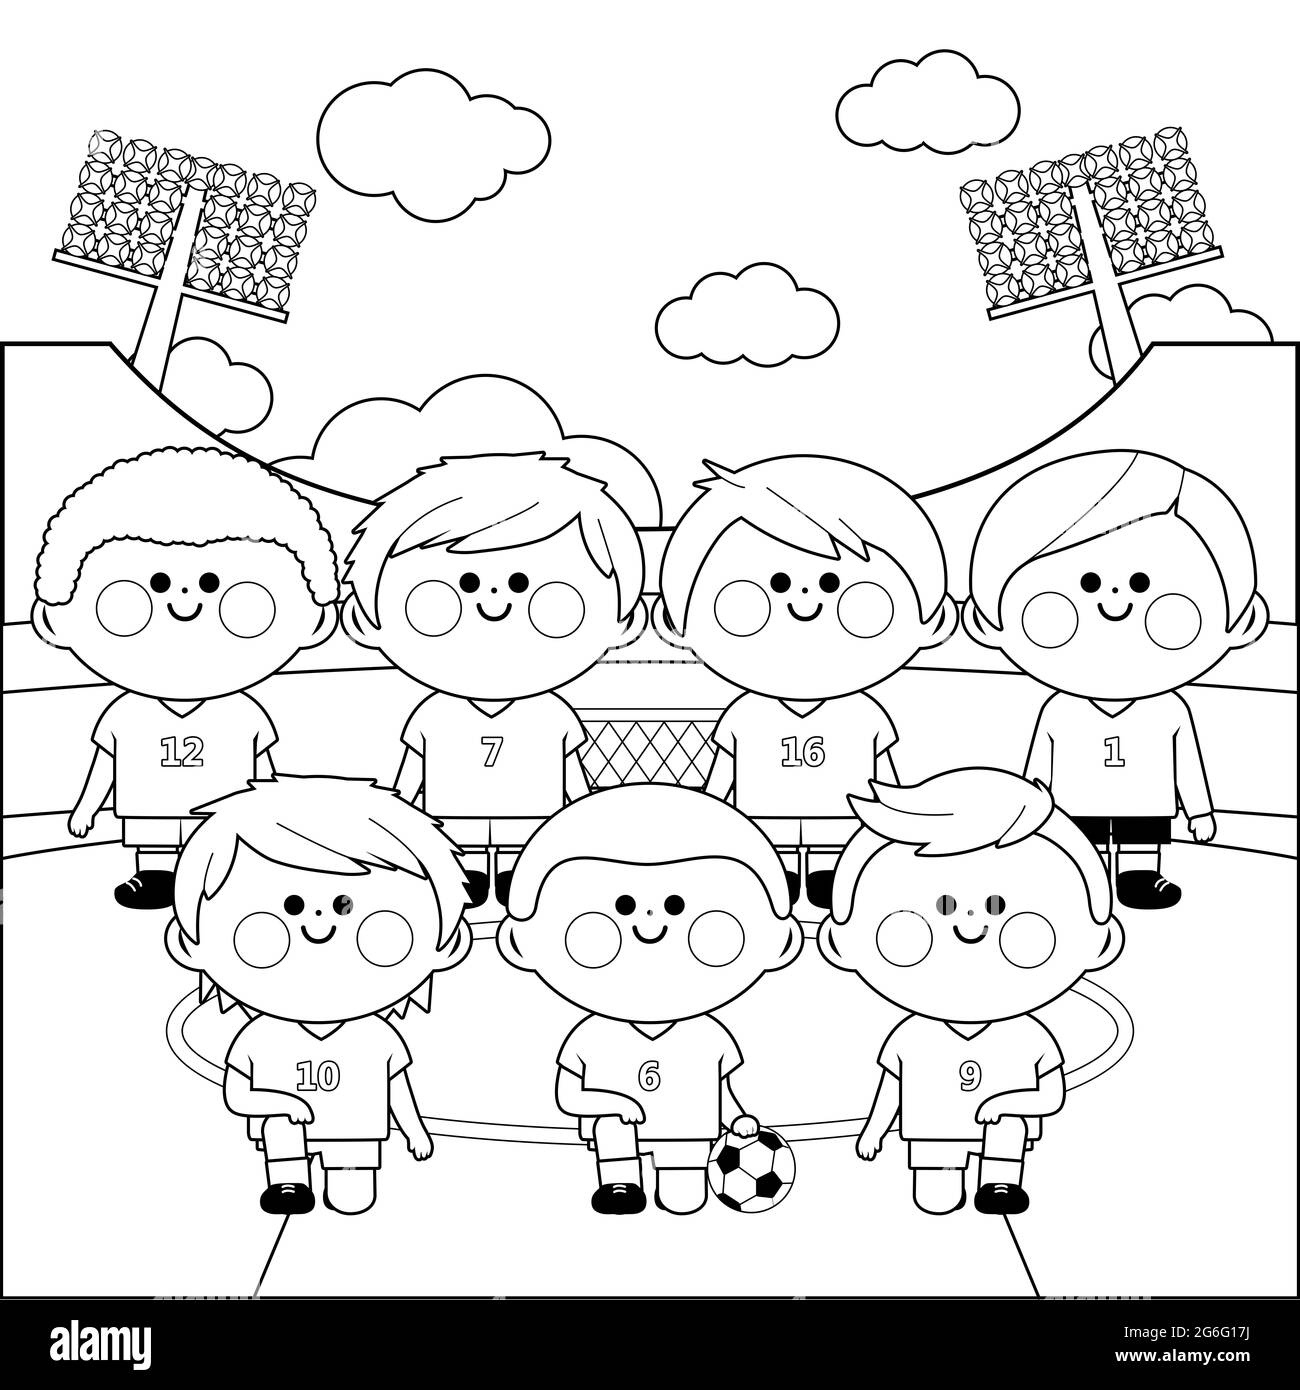 Équipe de football pour enfants dans un stade. Page de couleur noir et blanc Banque D'Images